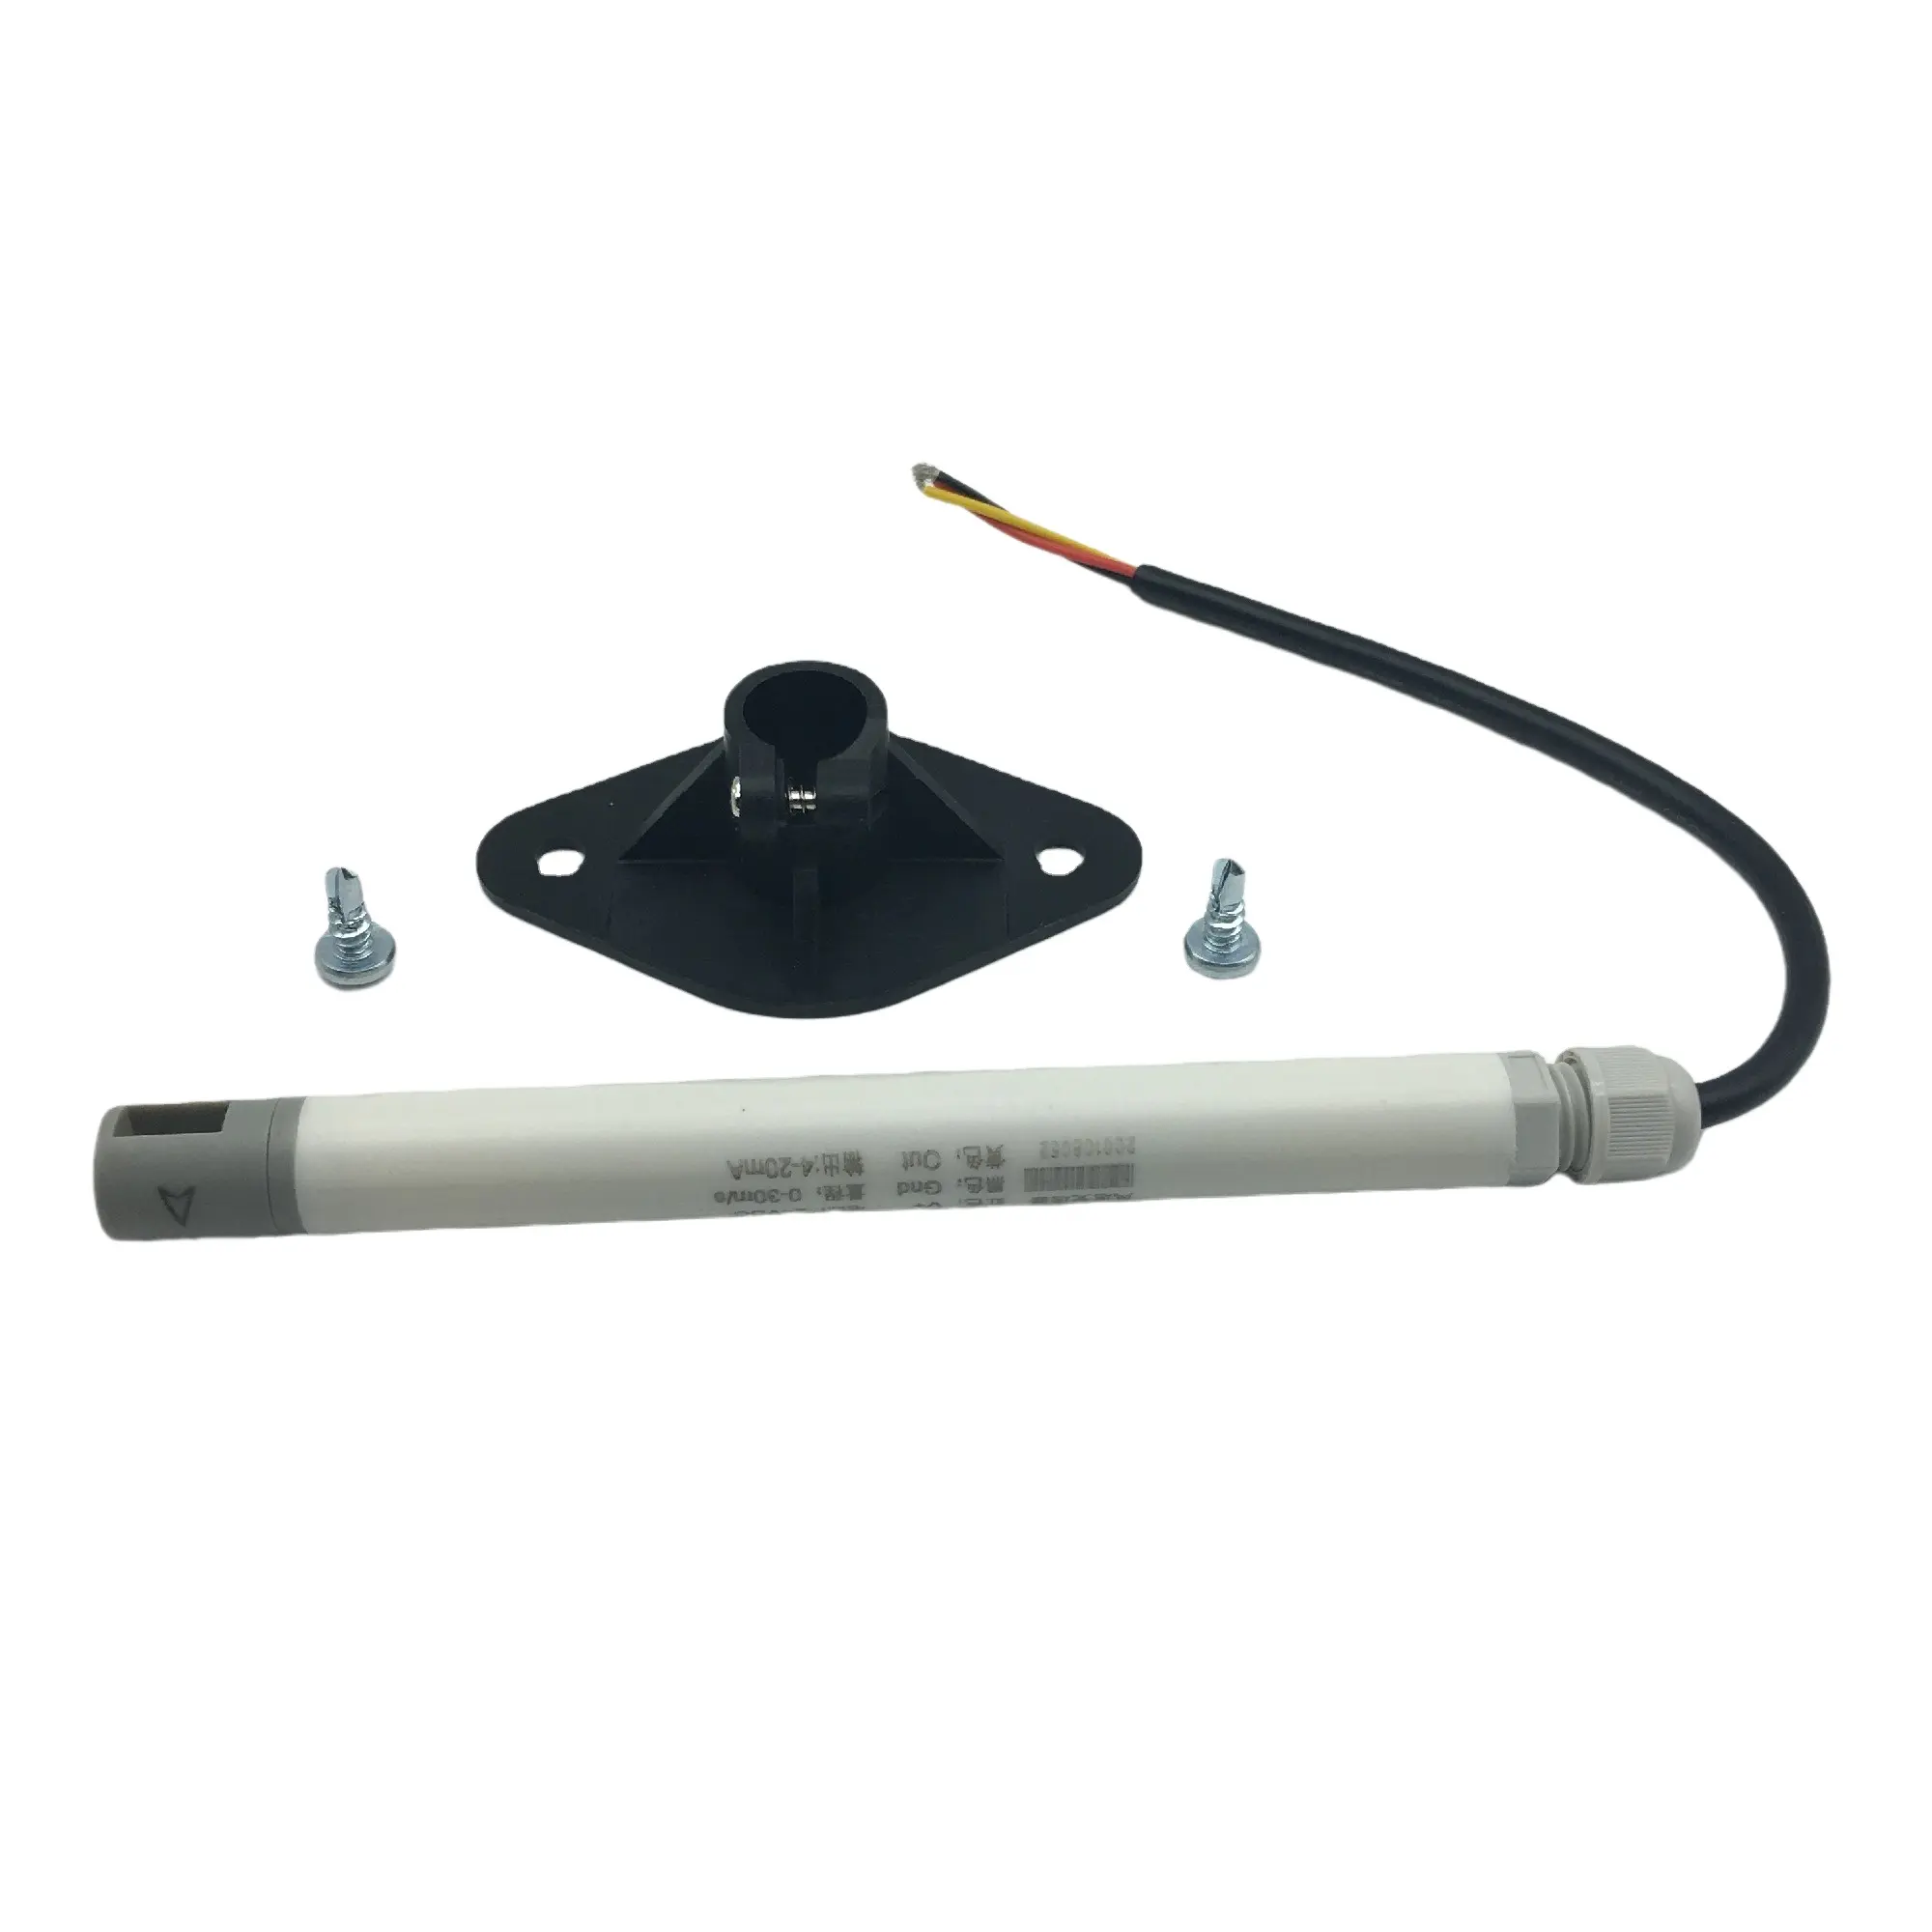 Ivanper hot sale 0-10m/S 4-20ma Output signal anemometer modbus wind meter